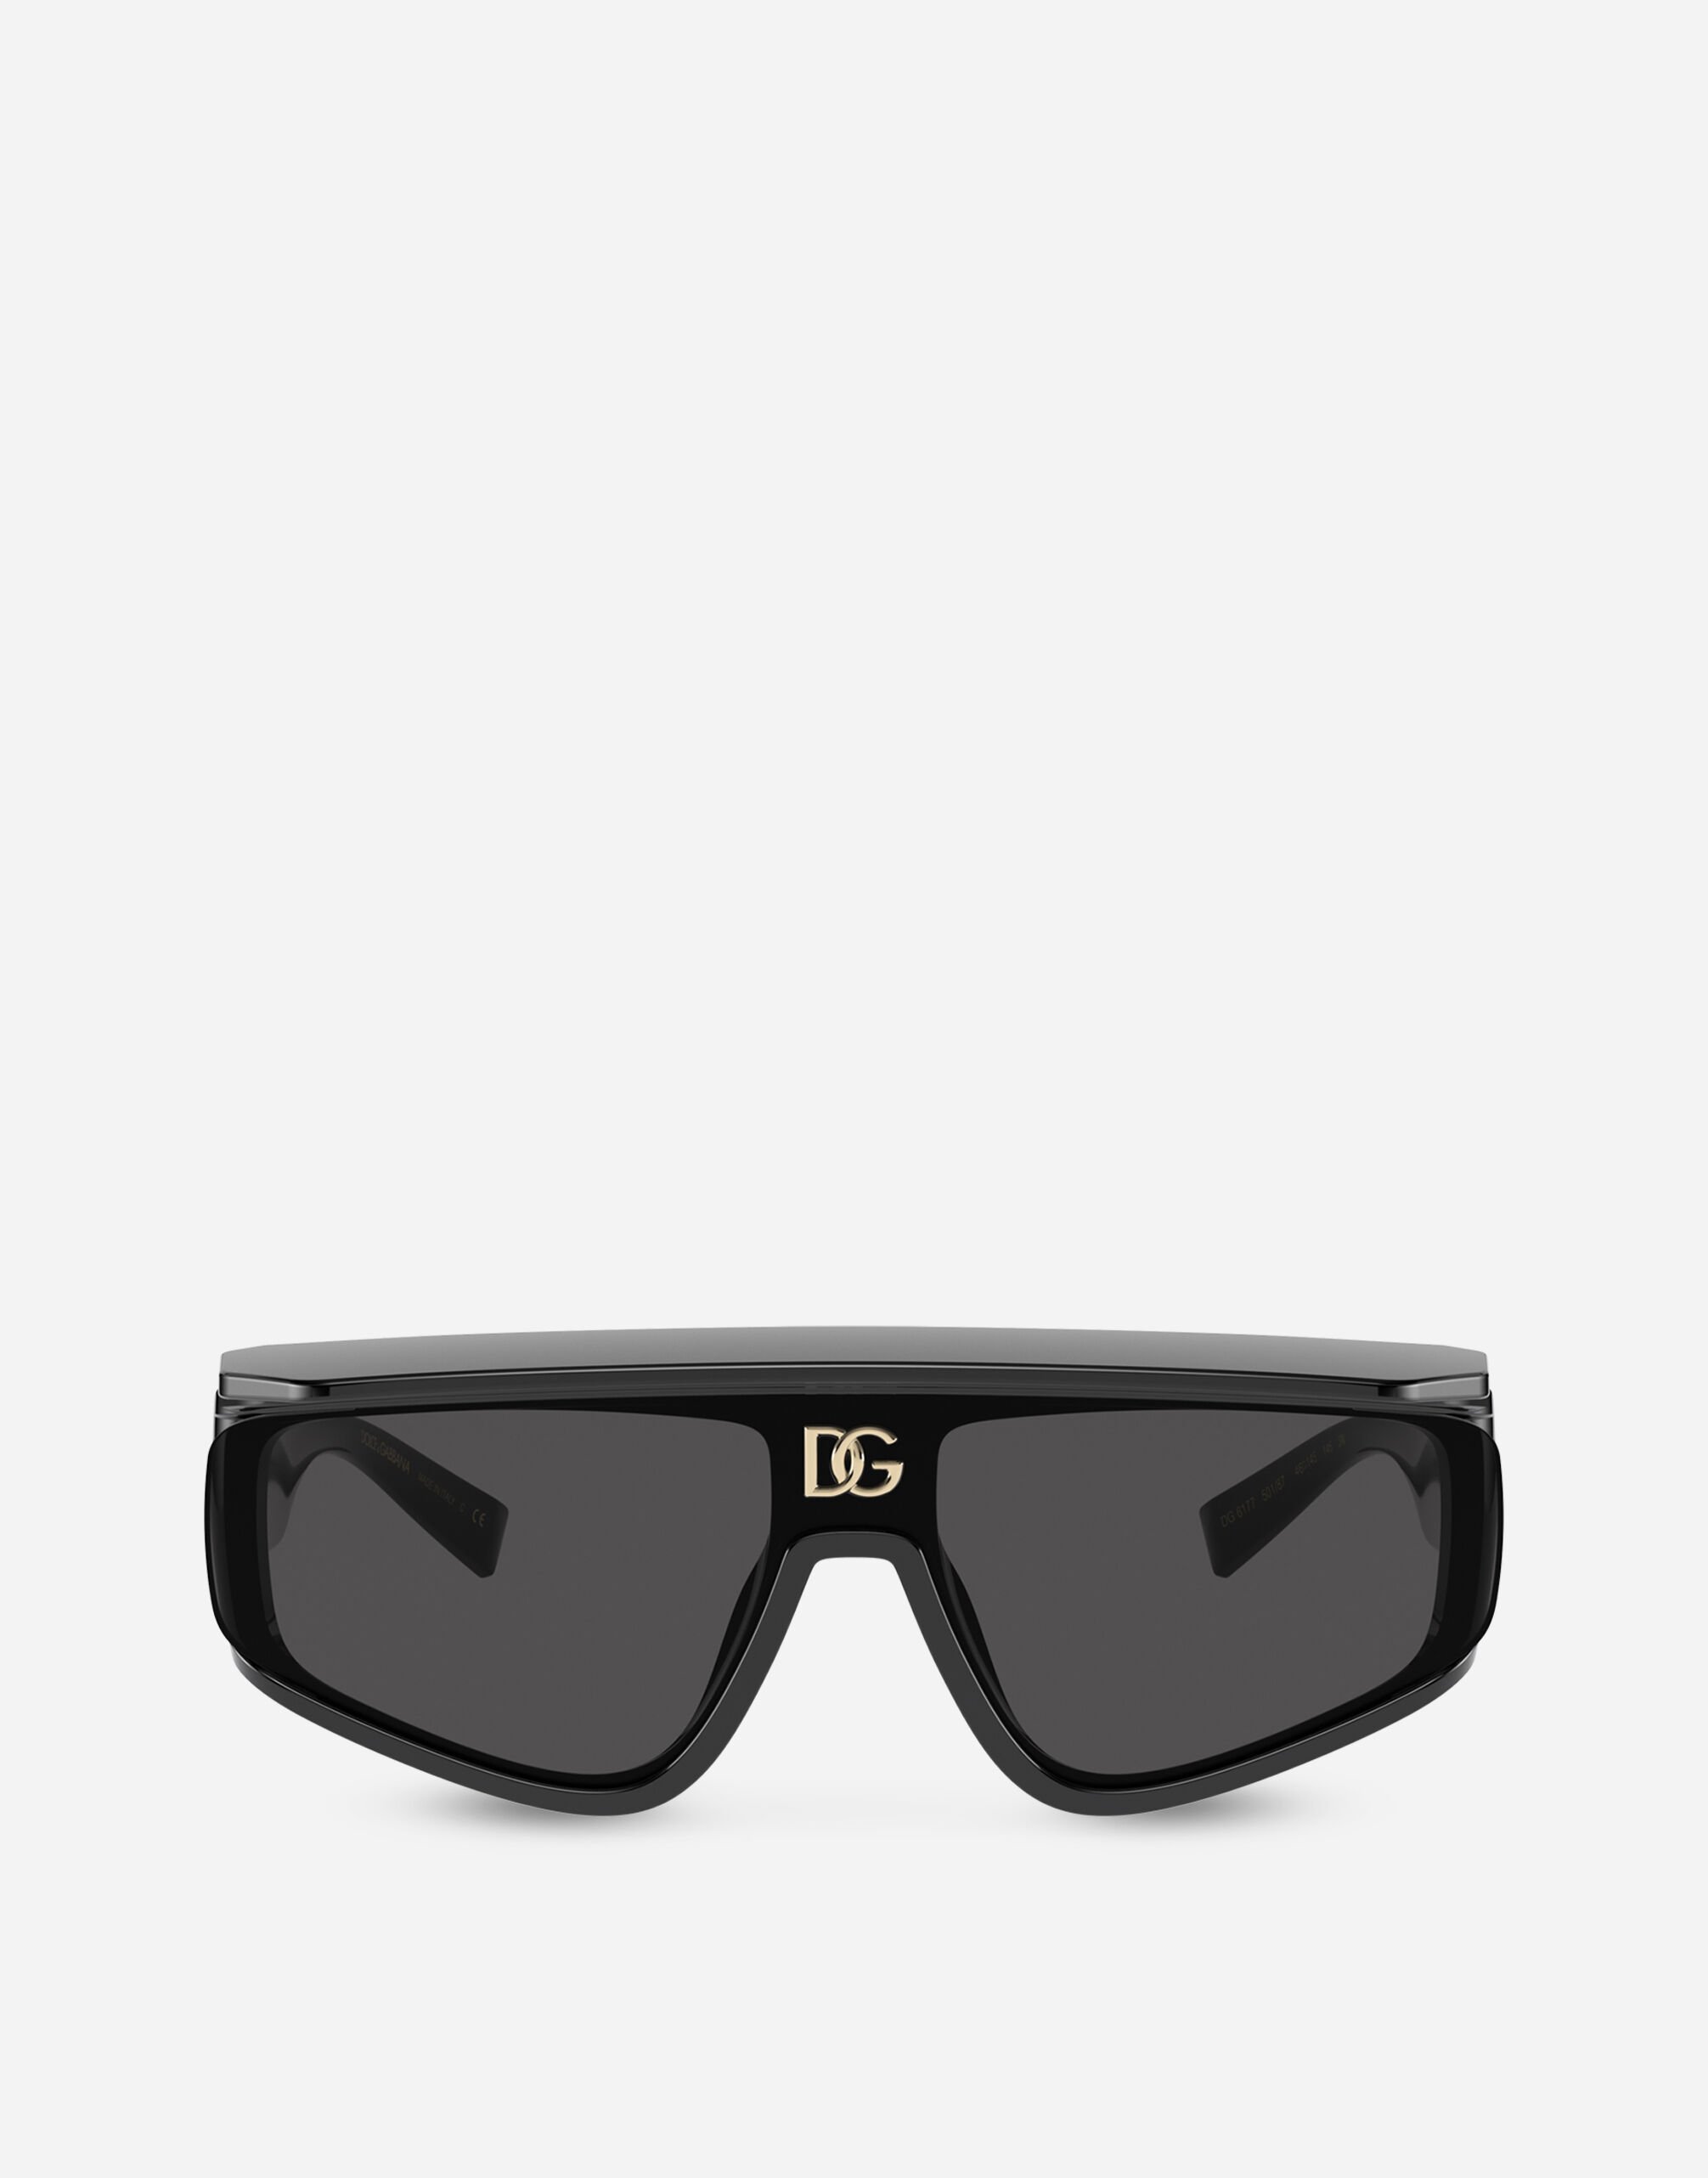 Dolce & Gabbana DG crossed sunglasses Black VG440AVP187